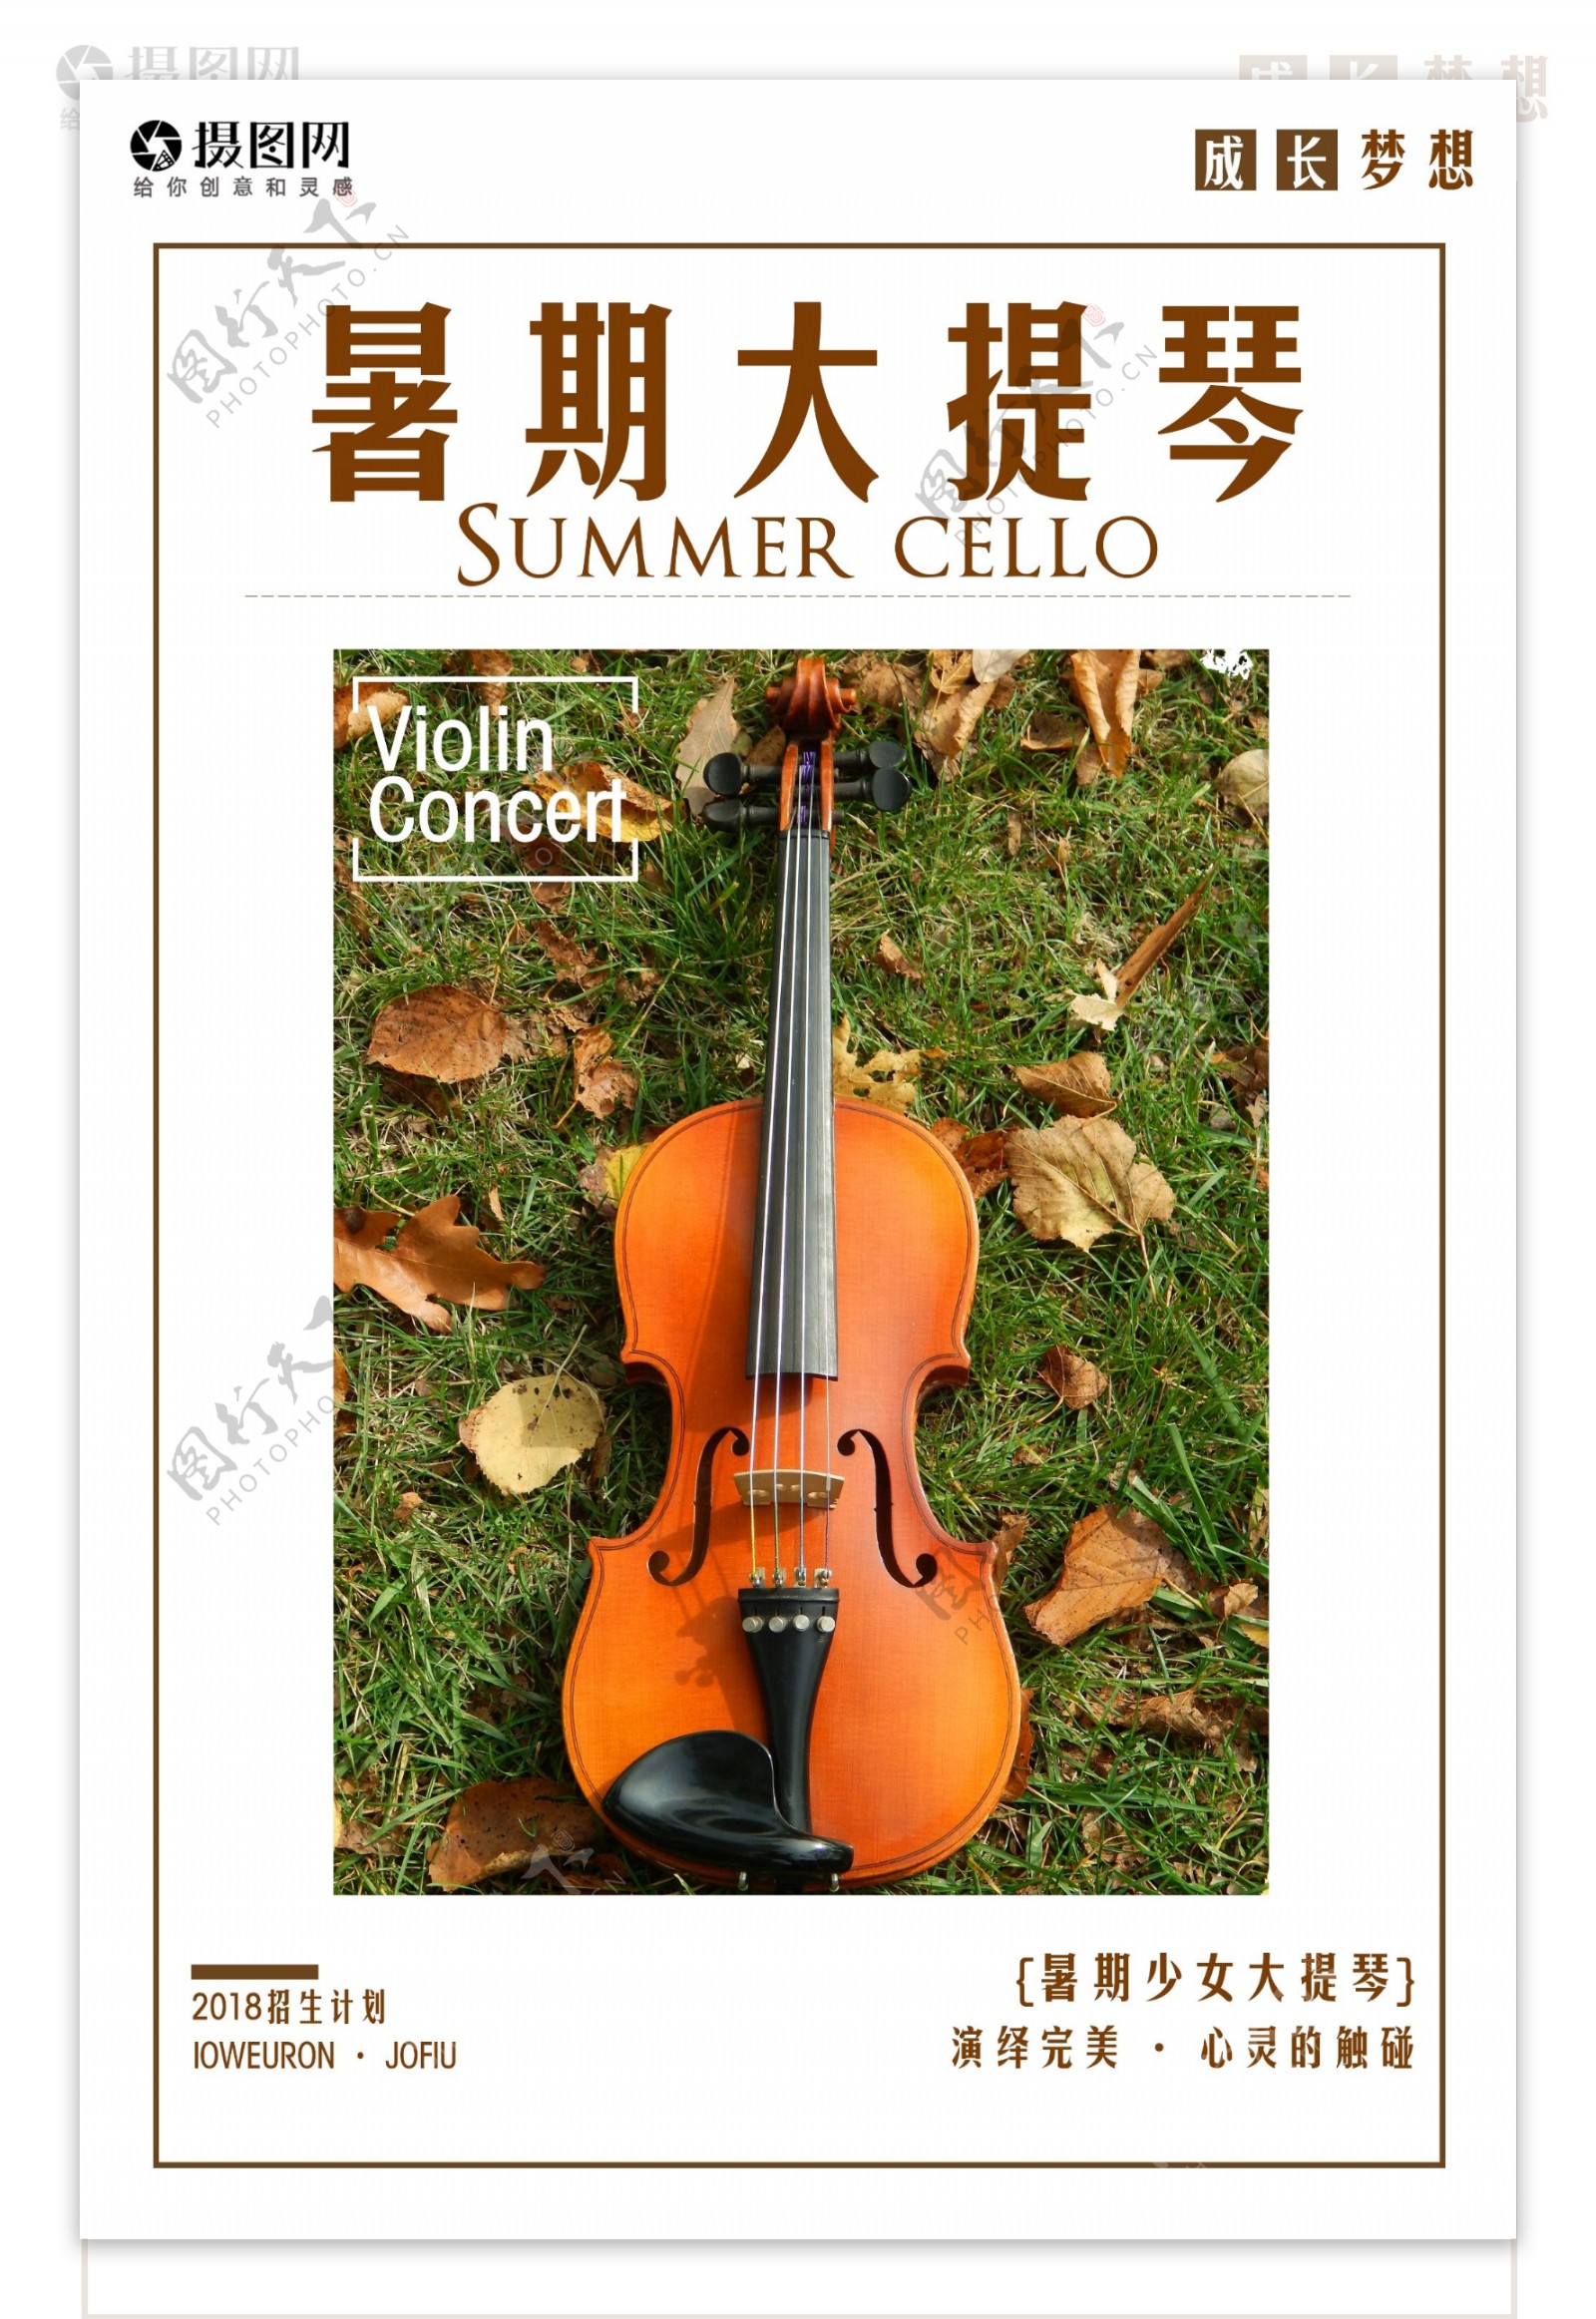 大提琴培训招生海报